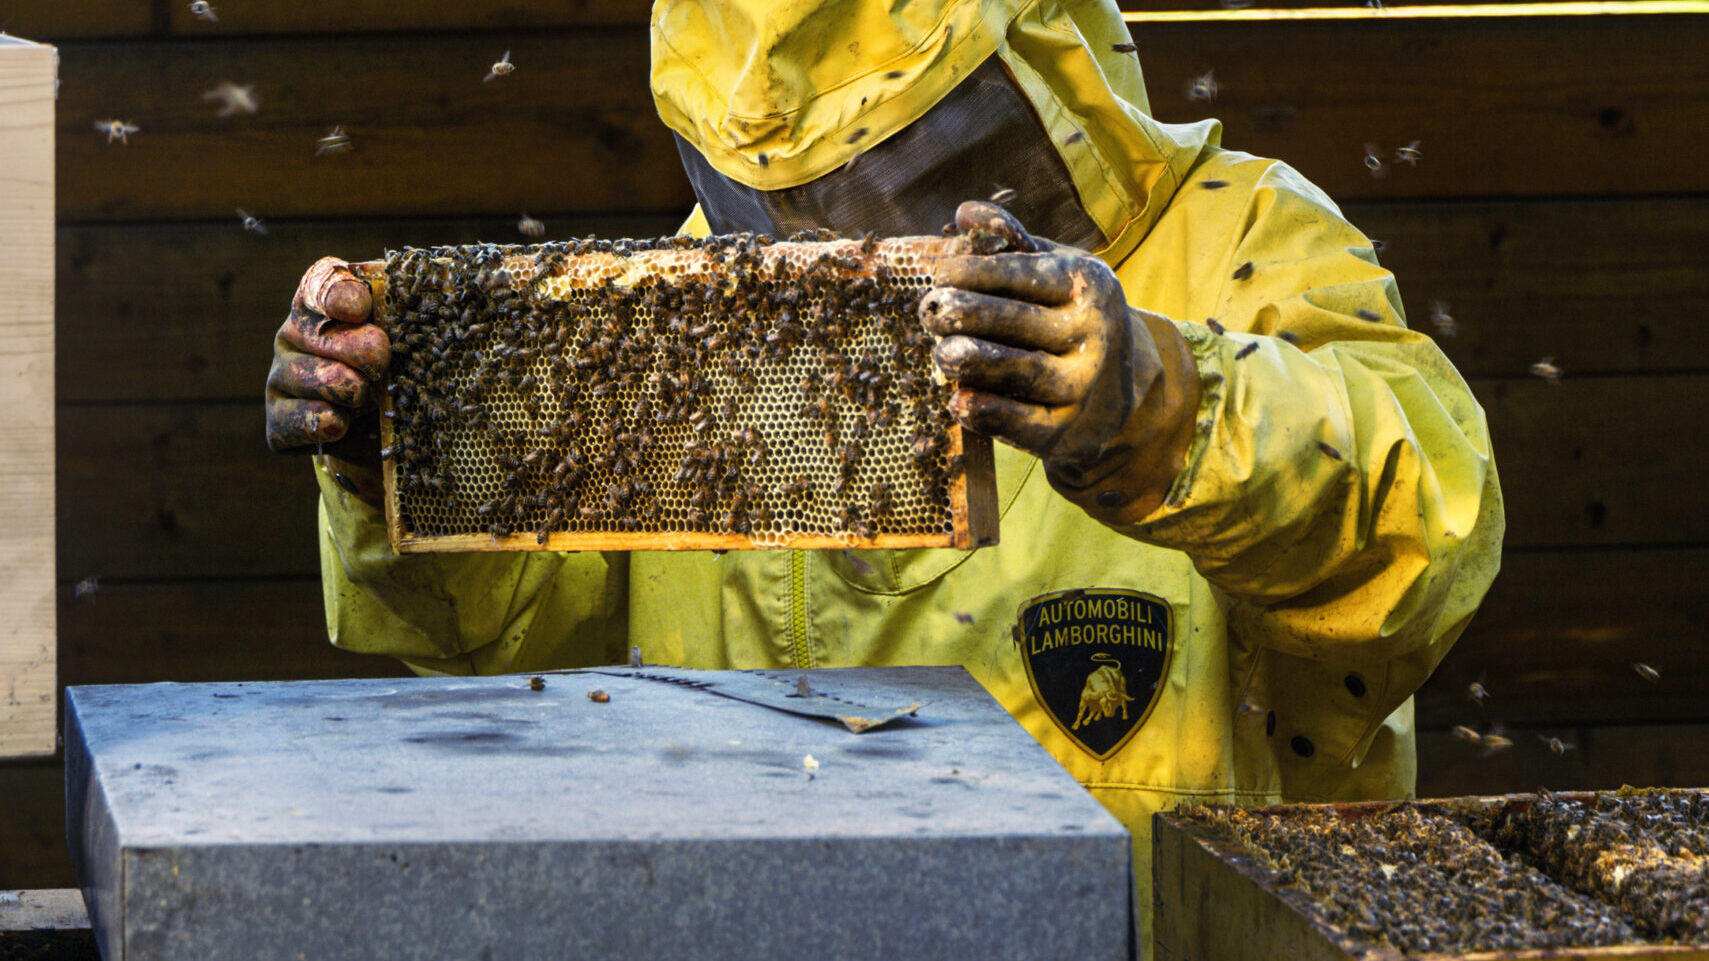 Automobili Lamborghini ha dato vita a progetti di biomonitoraggio con le api